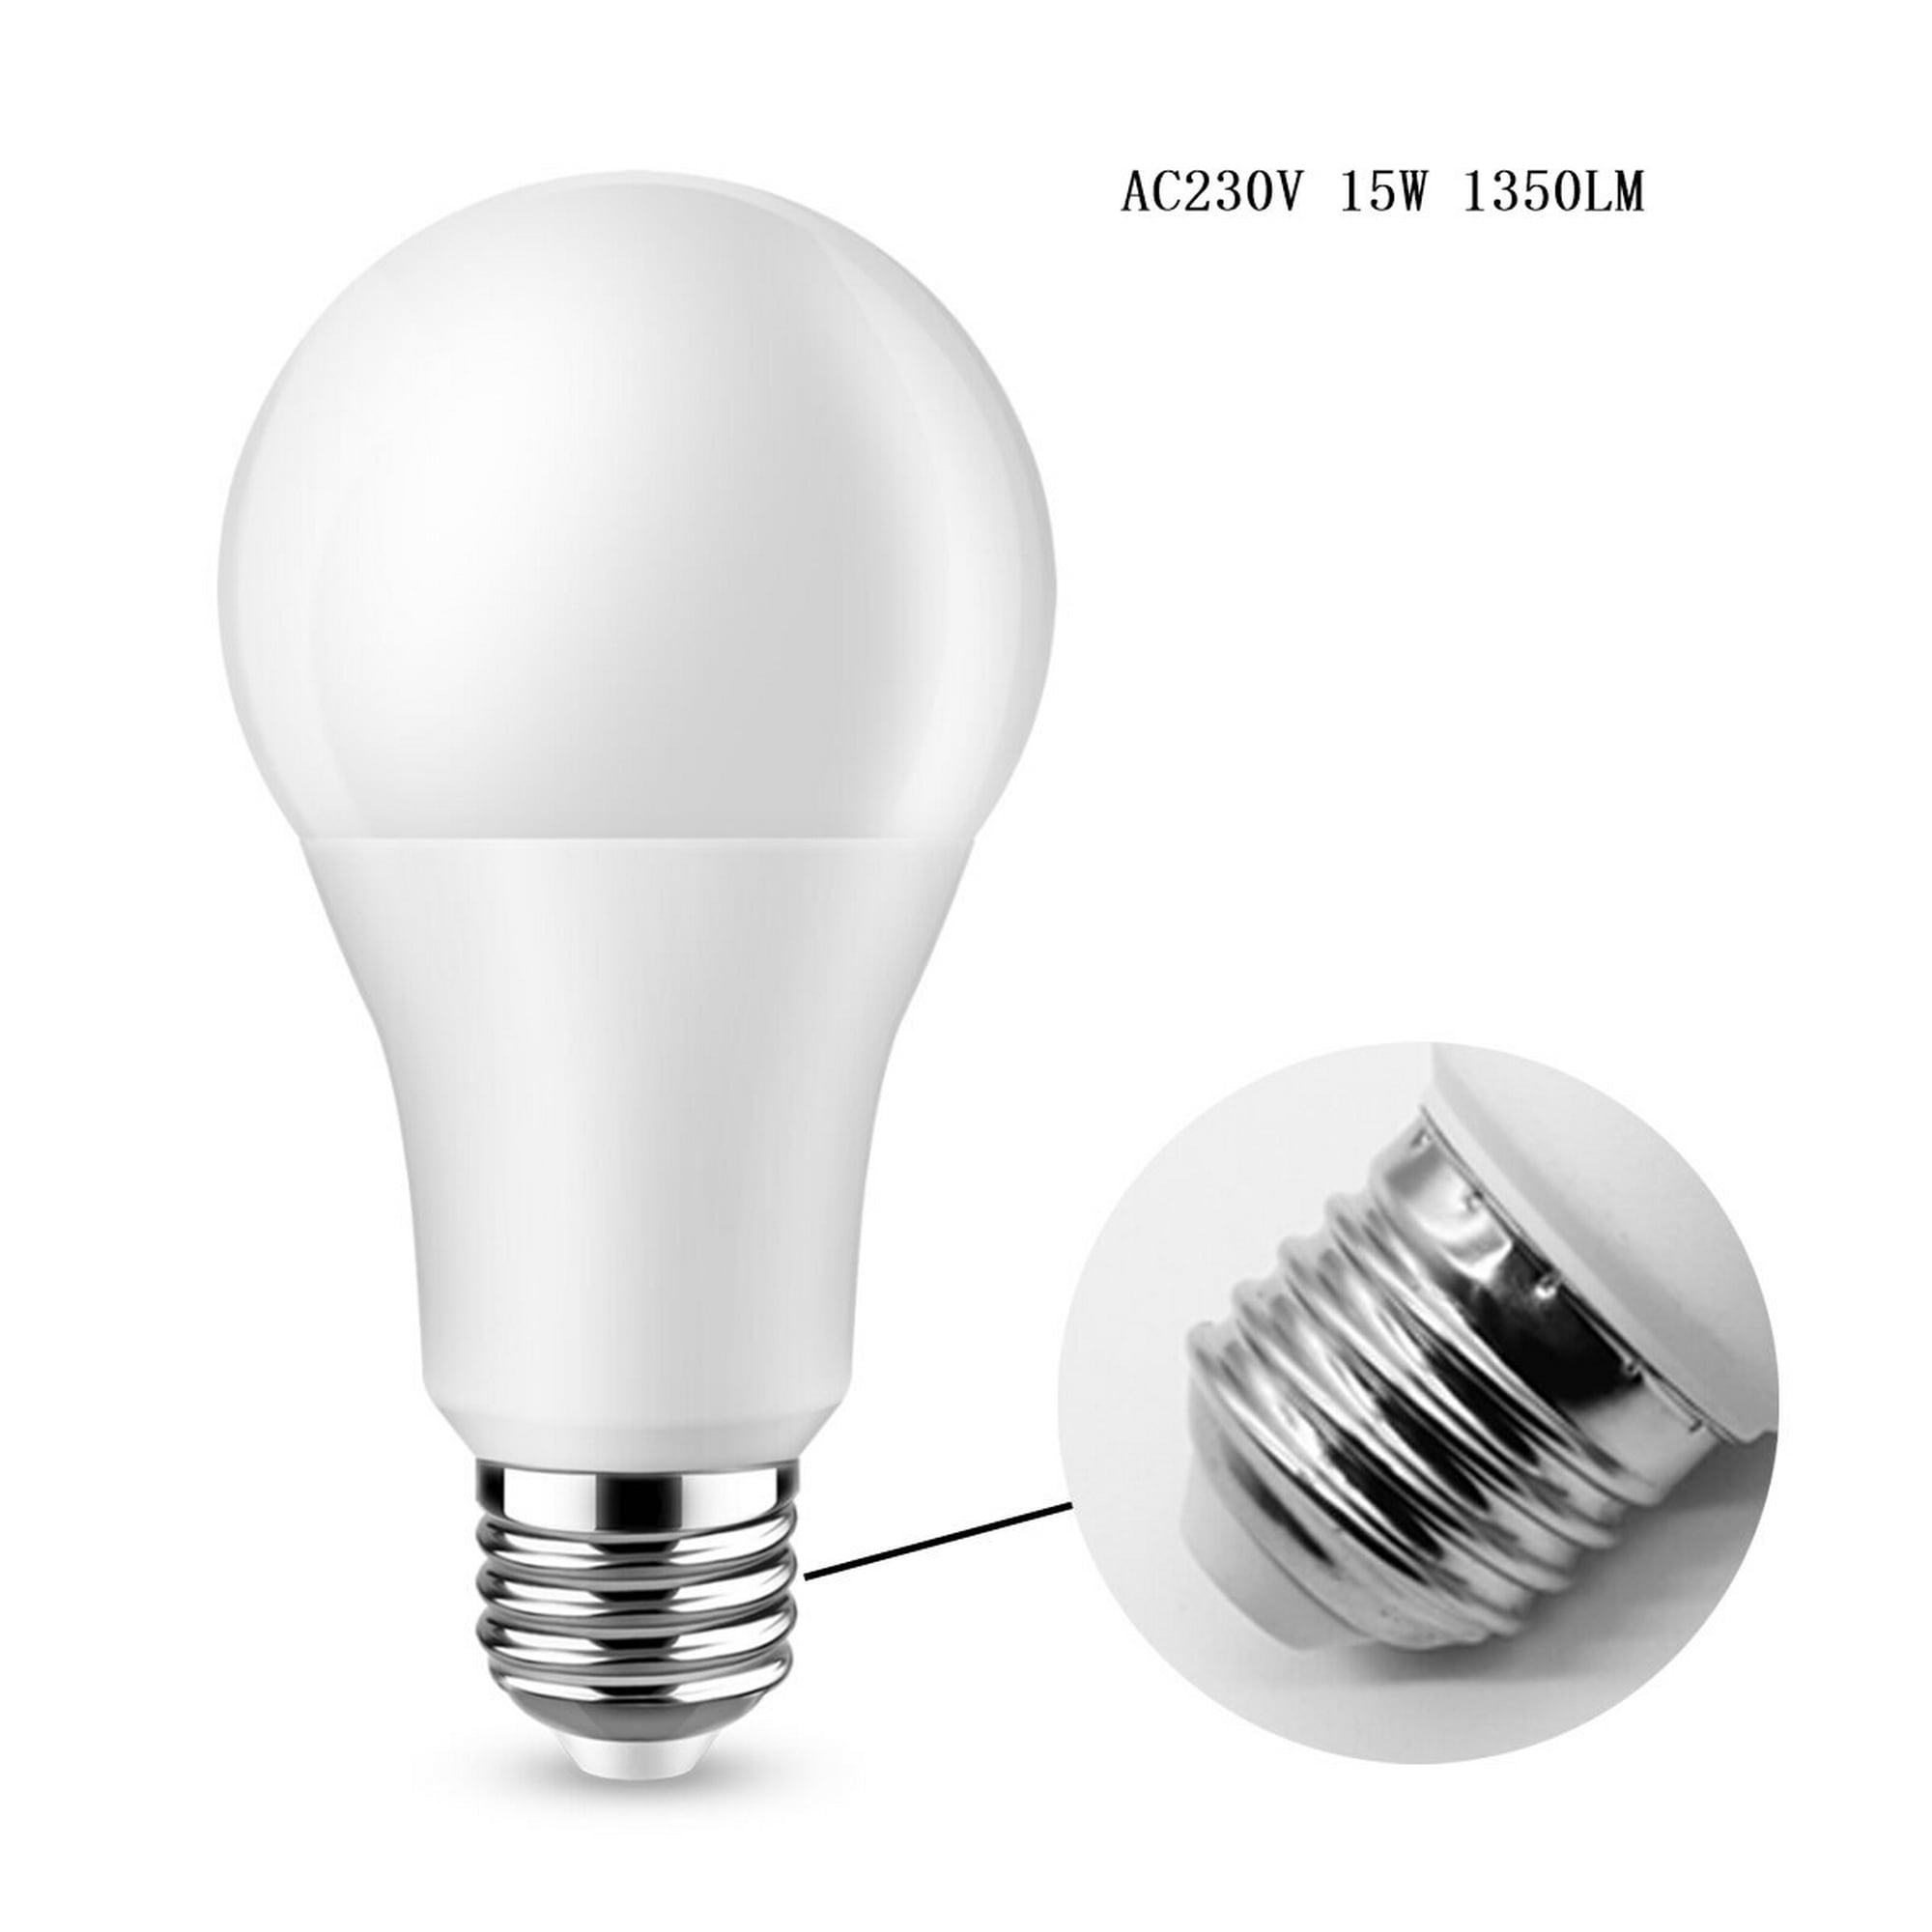  Luopan Iluminación interior 3W 5W 7W Foco LED Bombillas MR16  2835 SMD AC 110V 220V brillante blanco cálido frío lámpara LED ahorro de  energía para oficina en casa (color : un